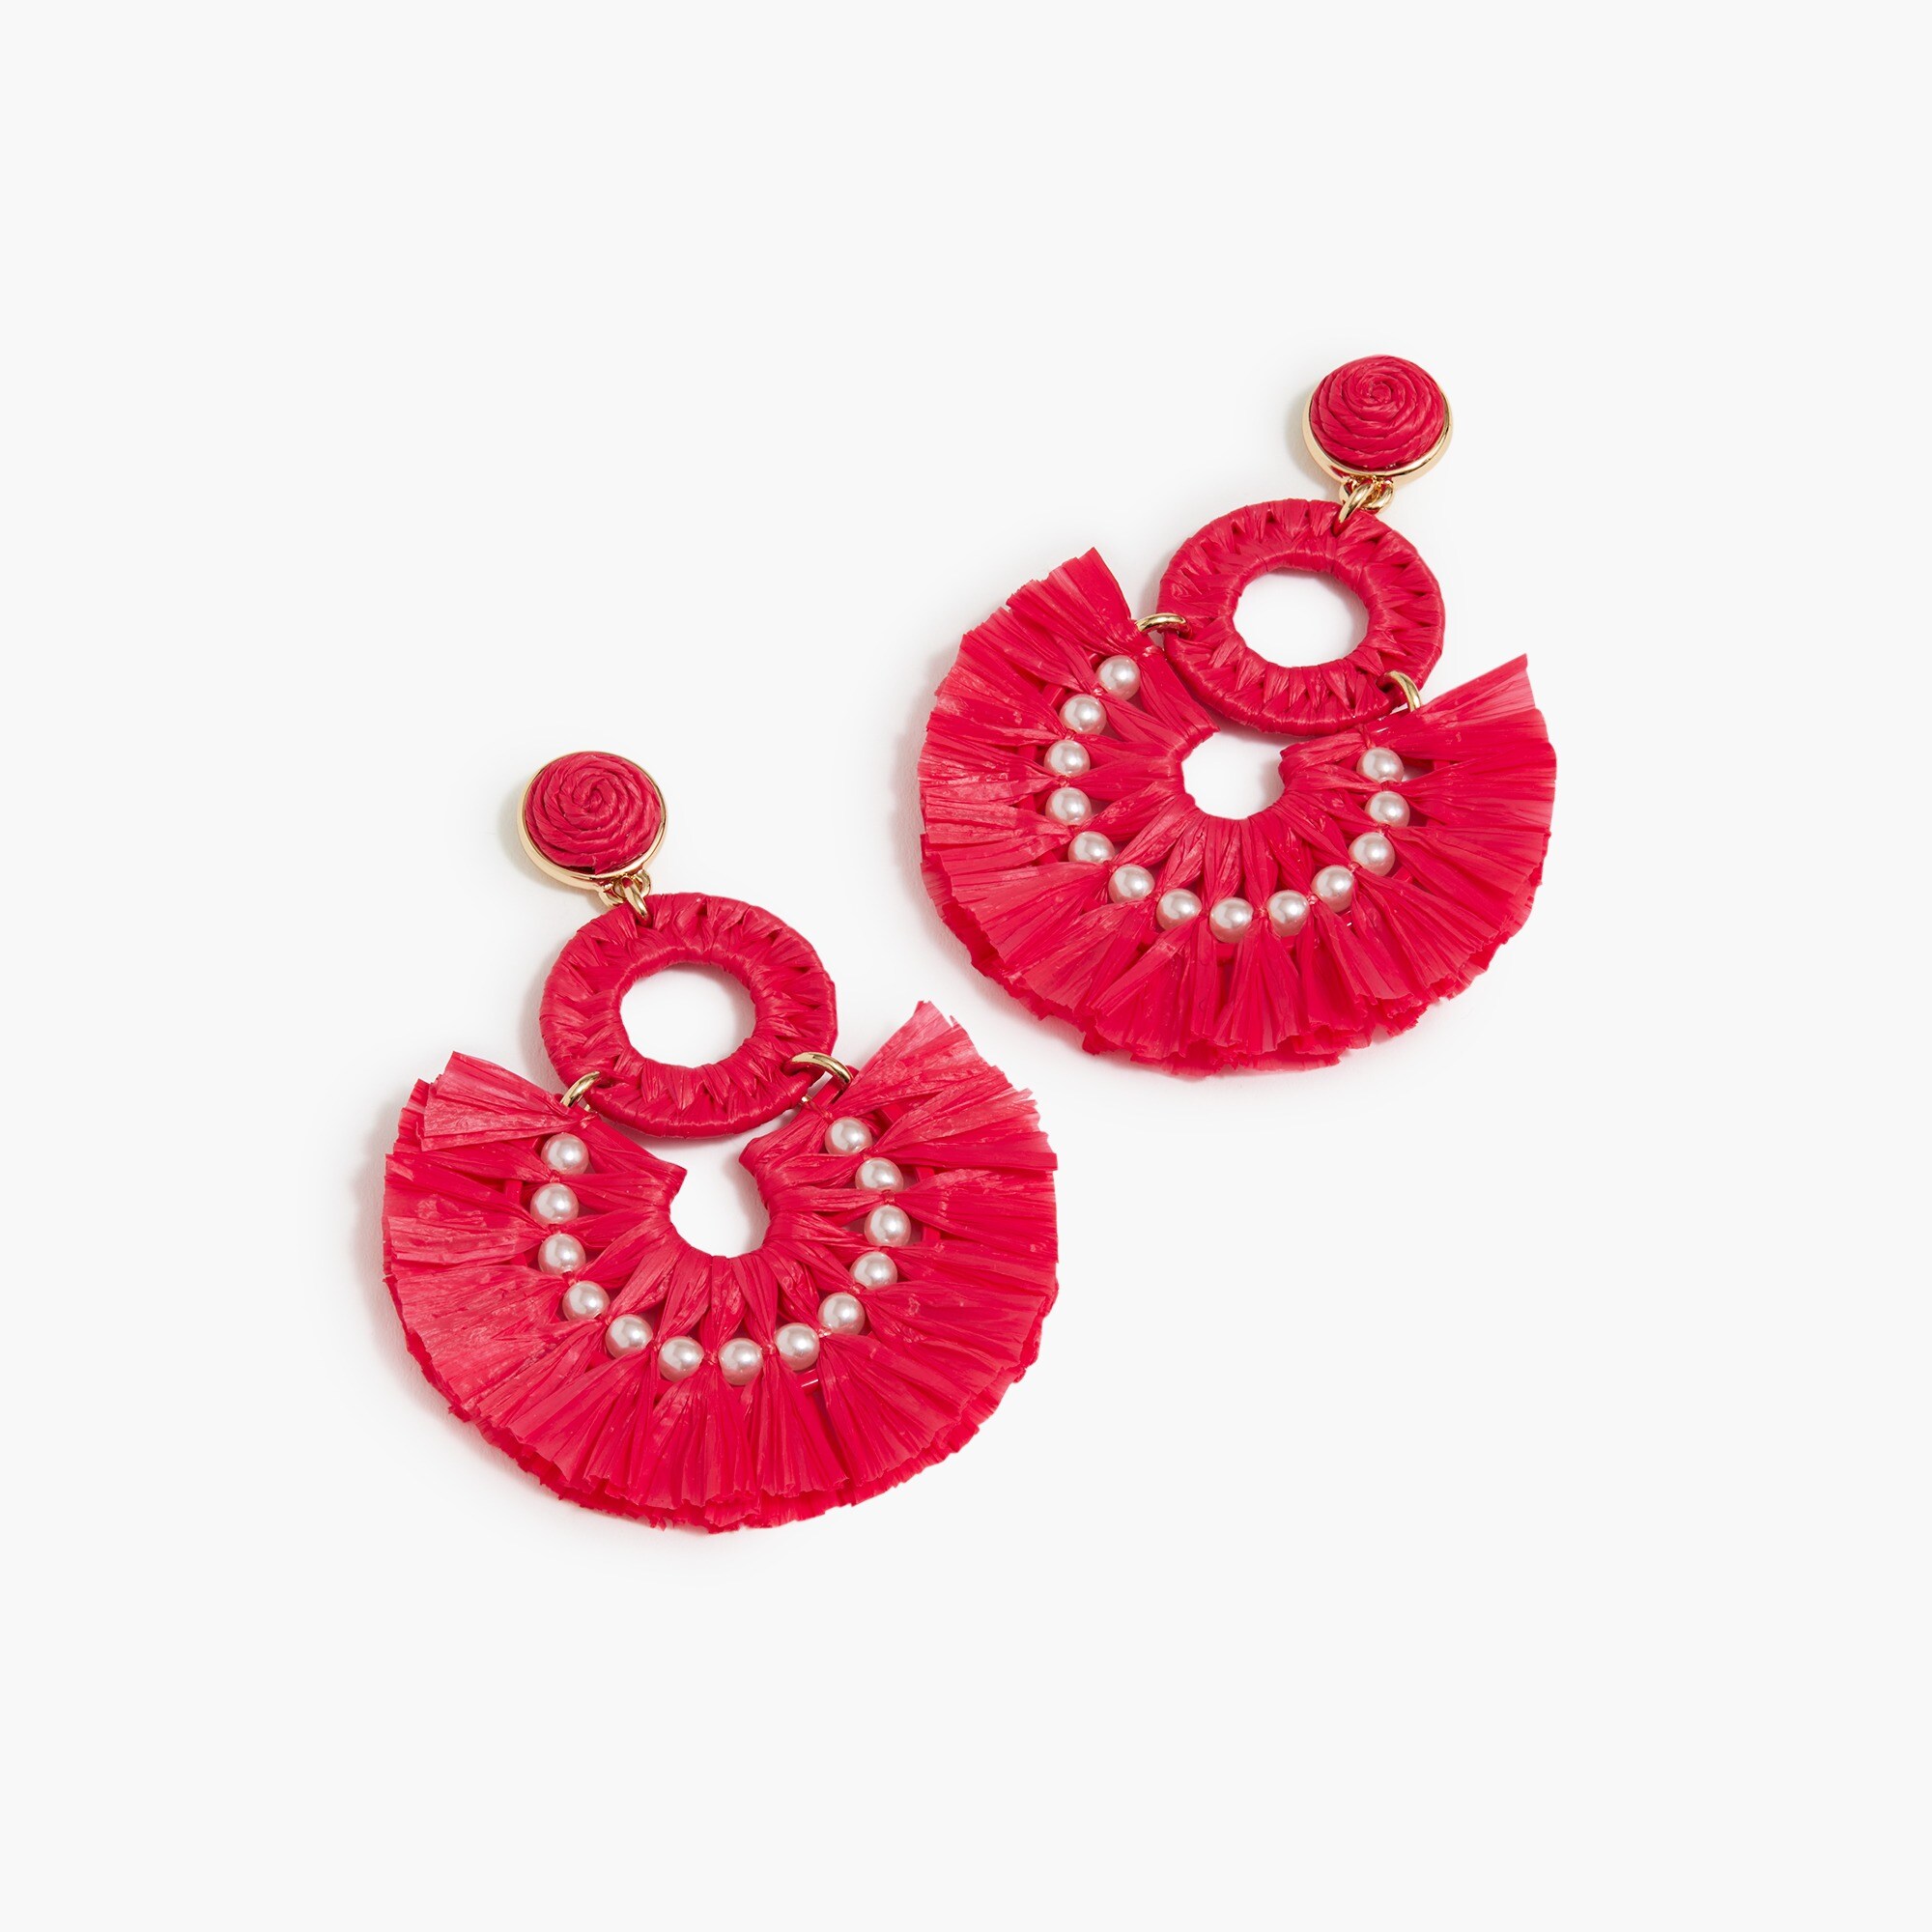  Raffia fan statement earrings